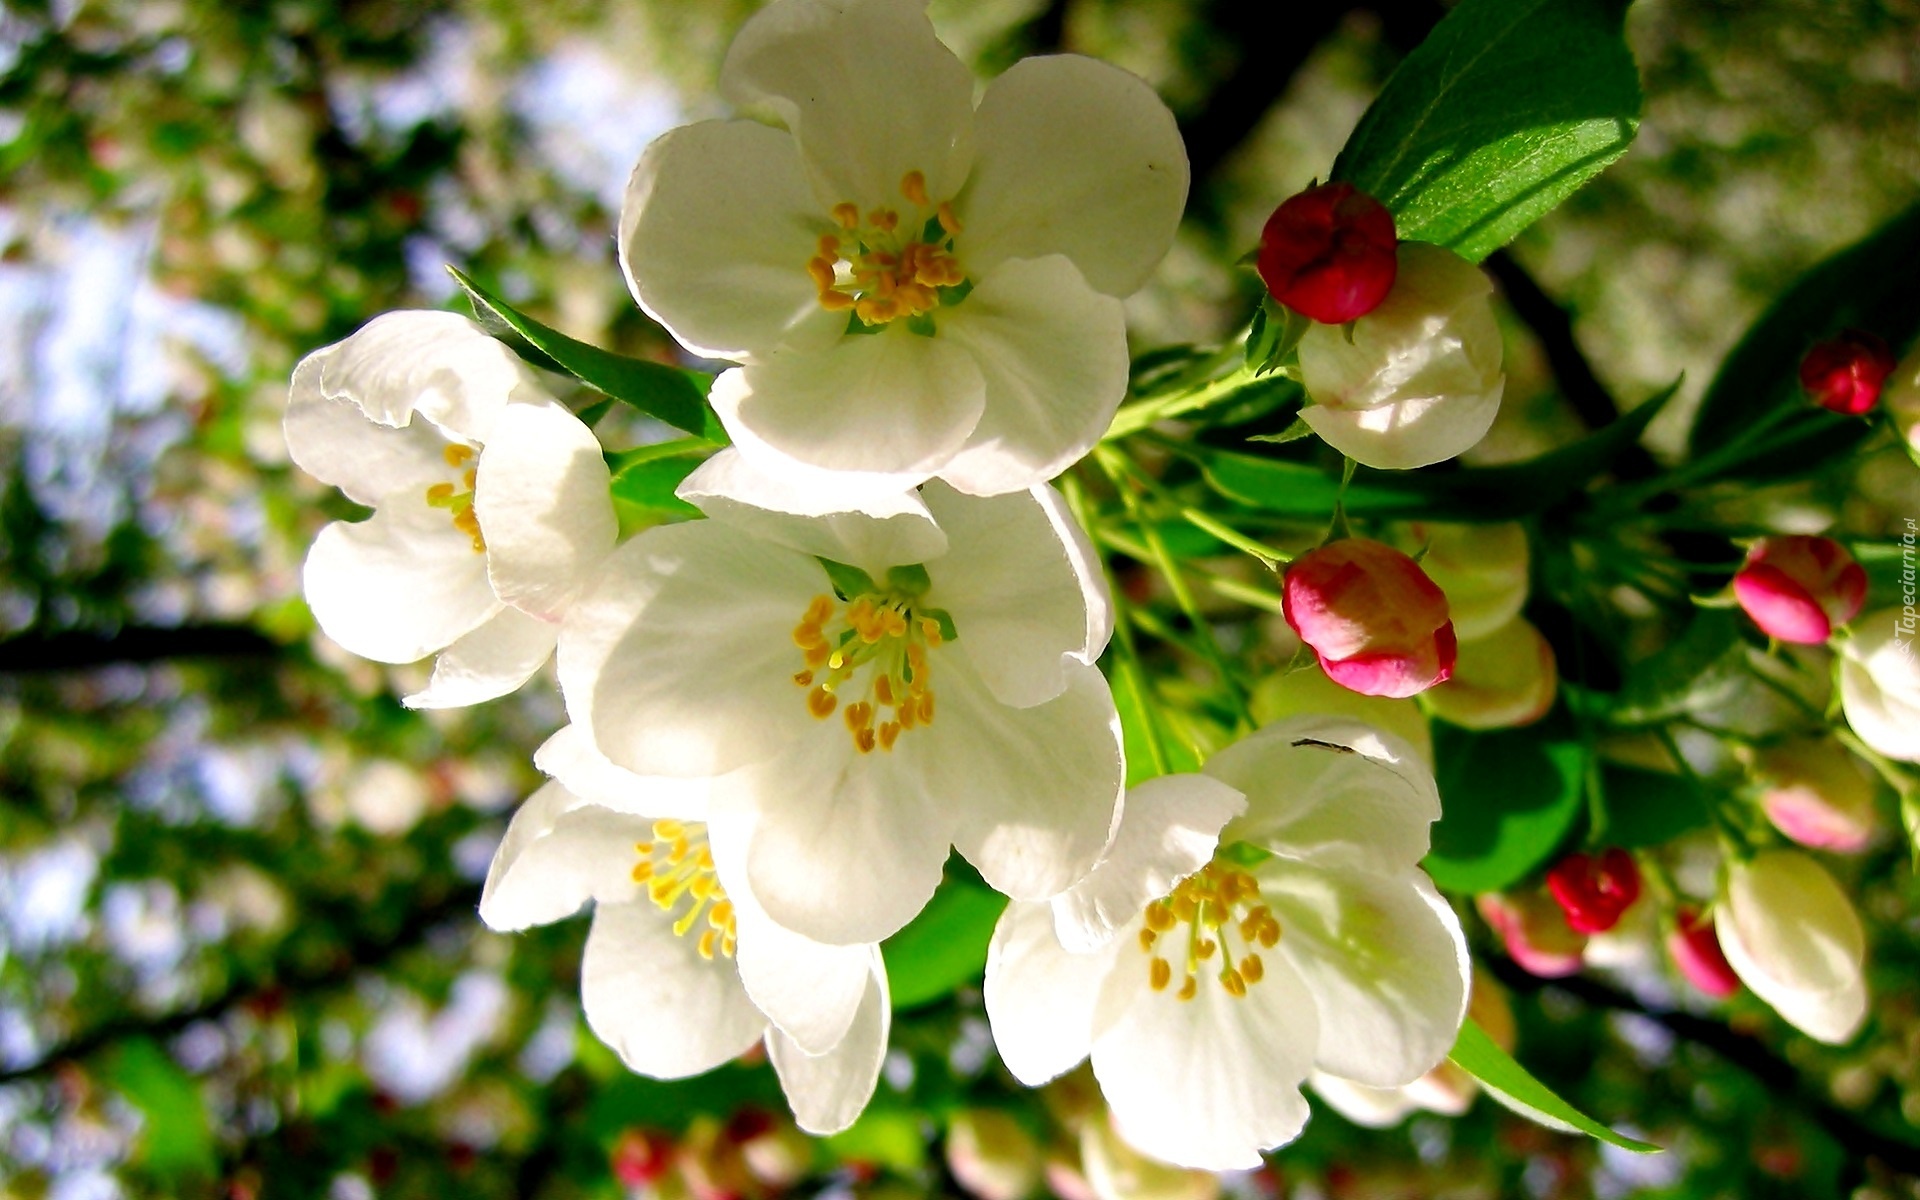 Wiosna, Kwiaty, Drzewo Owocowe, Jabłoń